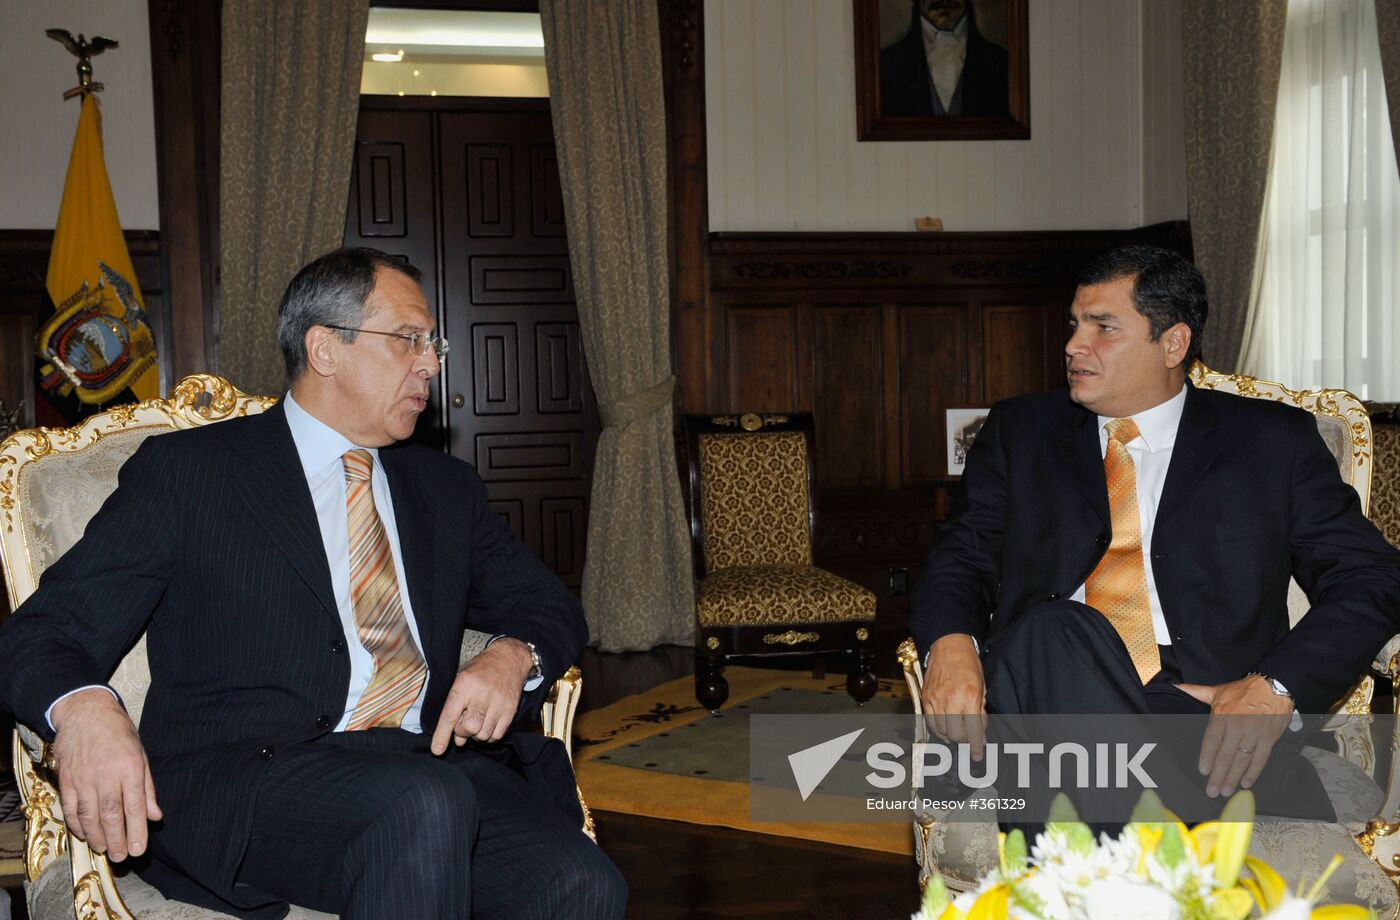 Russian Foreign Minister Sergei Lavrov visits Ecuador